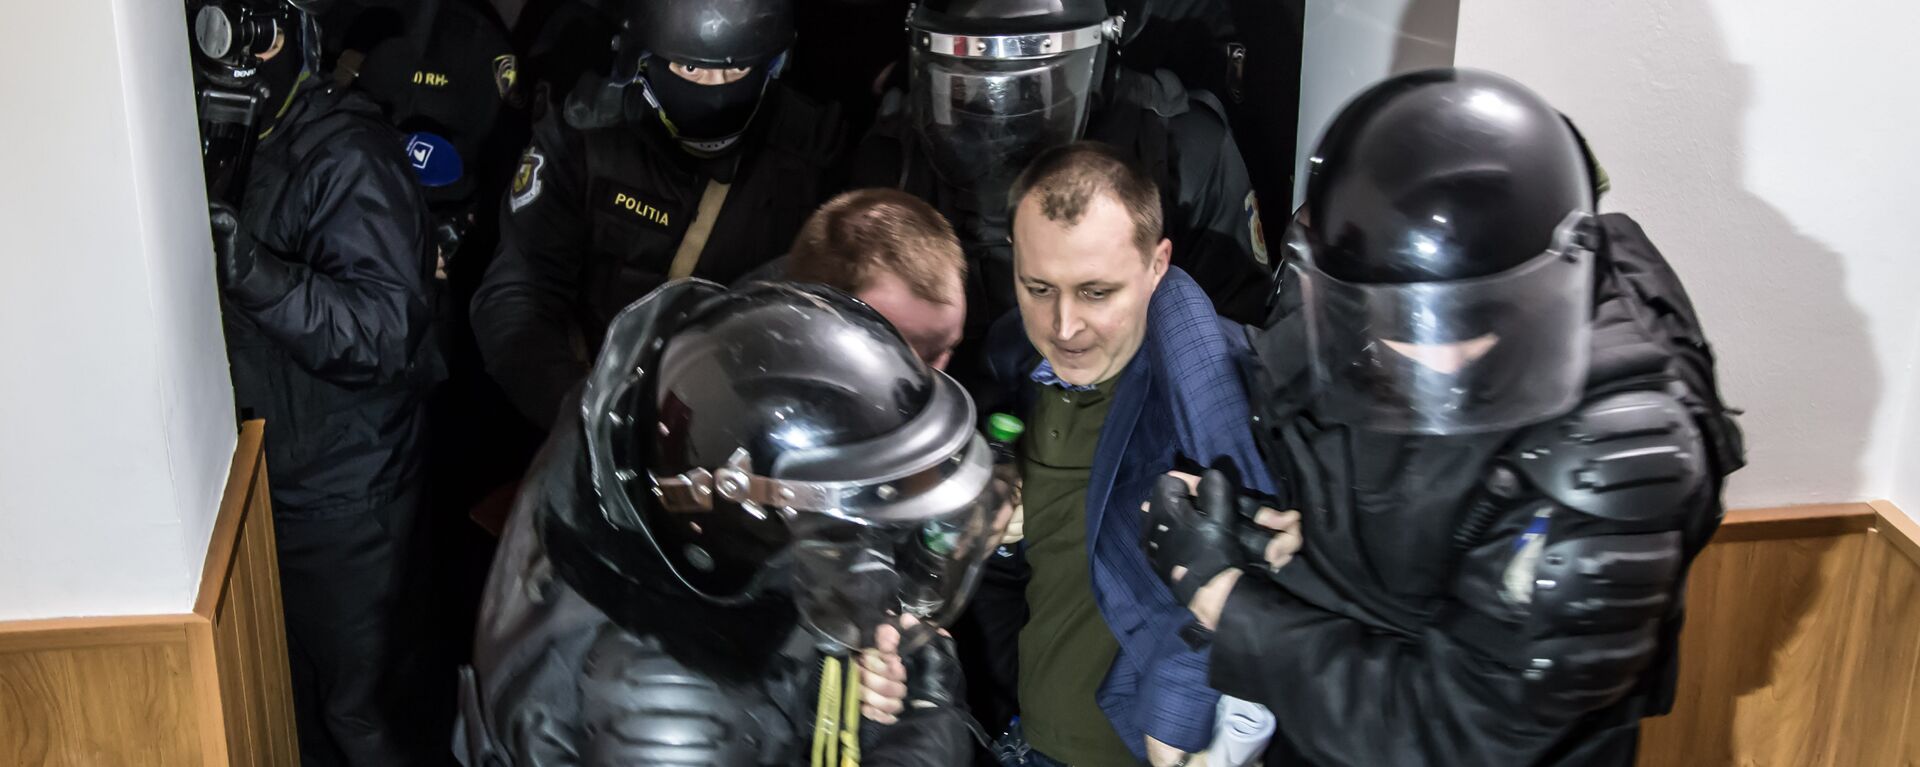 После этого арестованные сели на пол в зале суда, и полицейским пришлось их буквально выволакивать из здания. - Sputnik Moldova, 1920, 04.04.2016